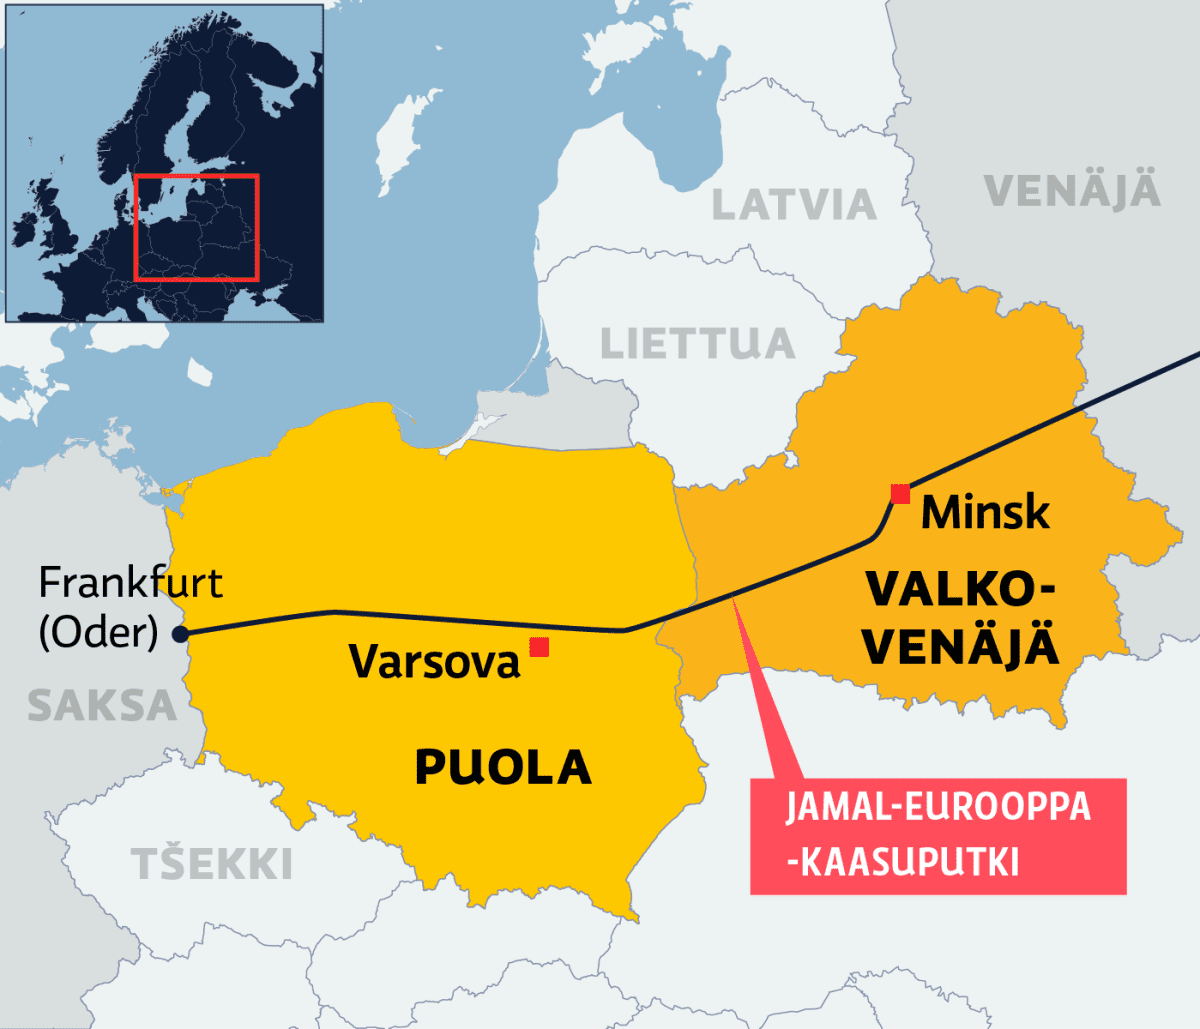 Kartalla Jamal-Eurooppa -kaasuputki Venäjältä Valko-Venäjän ja Puolan kautta Saksaan.